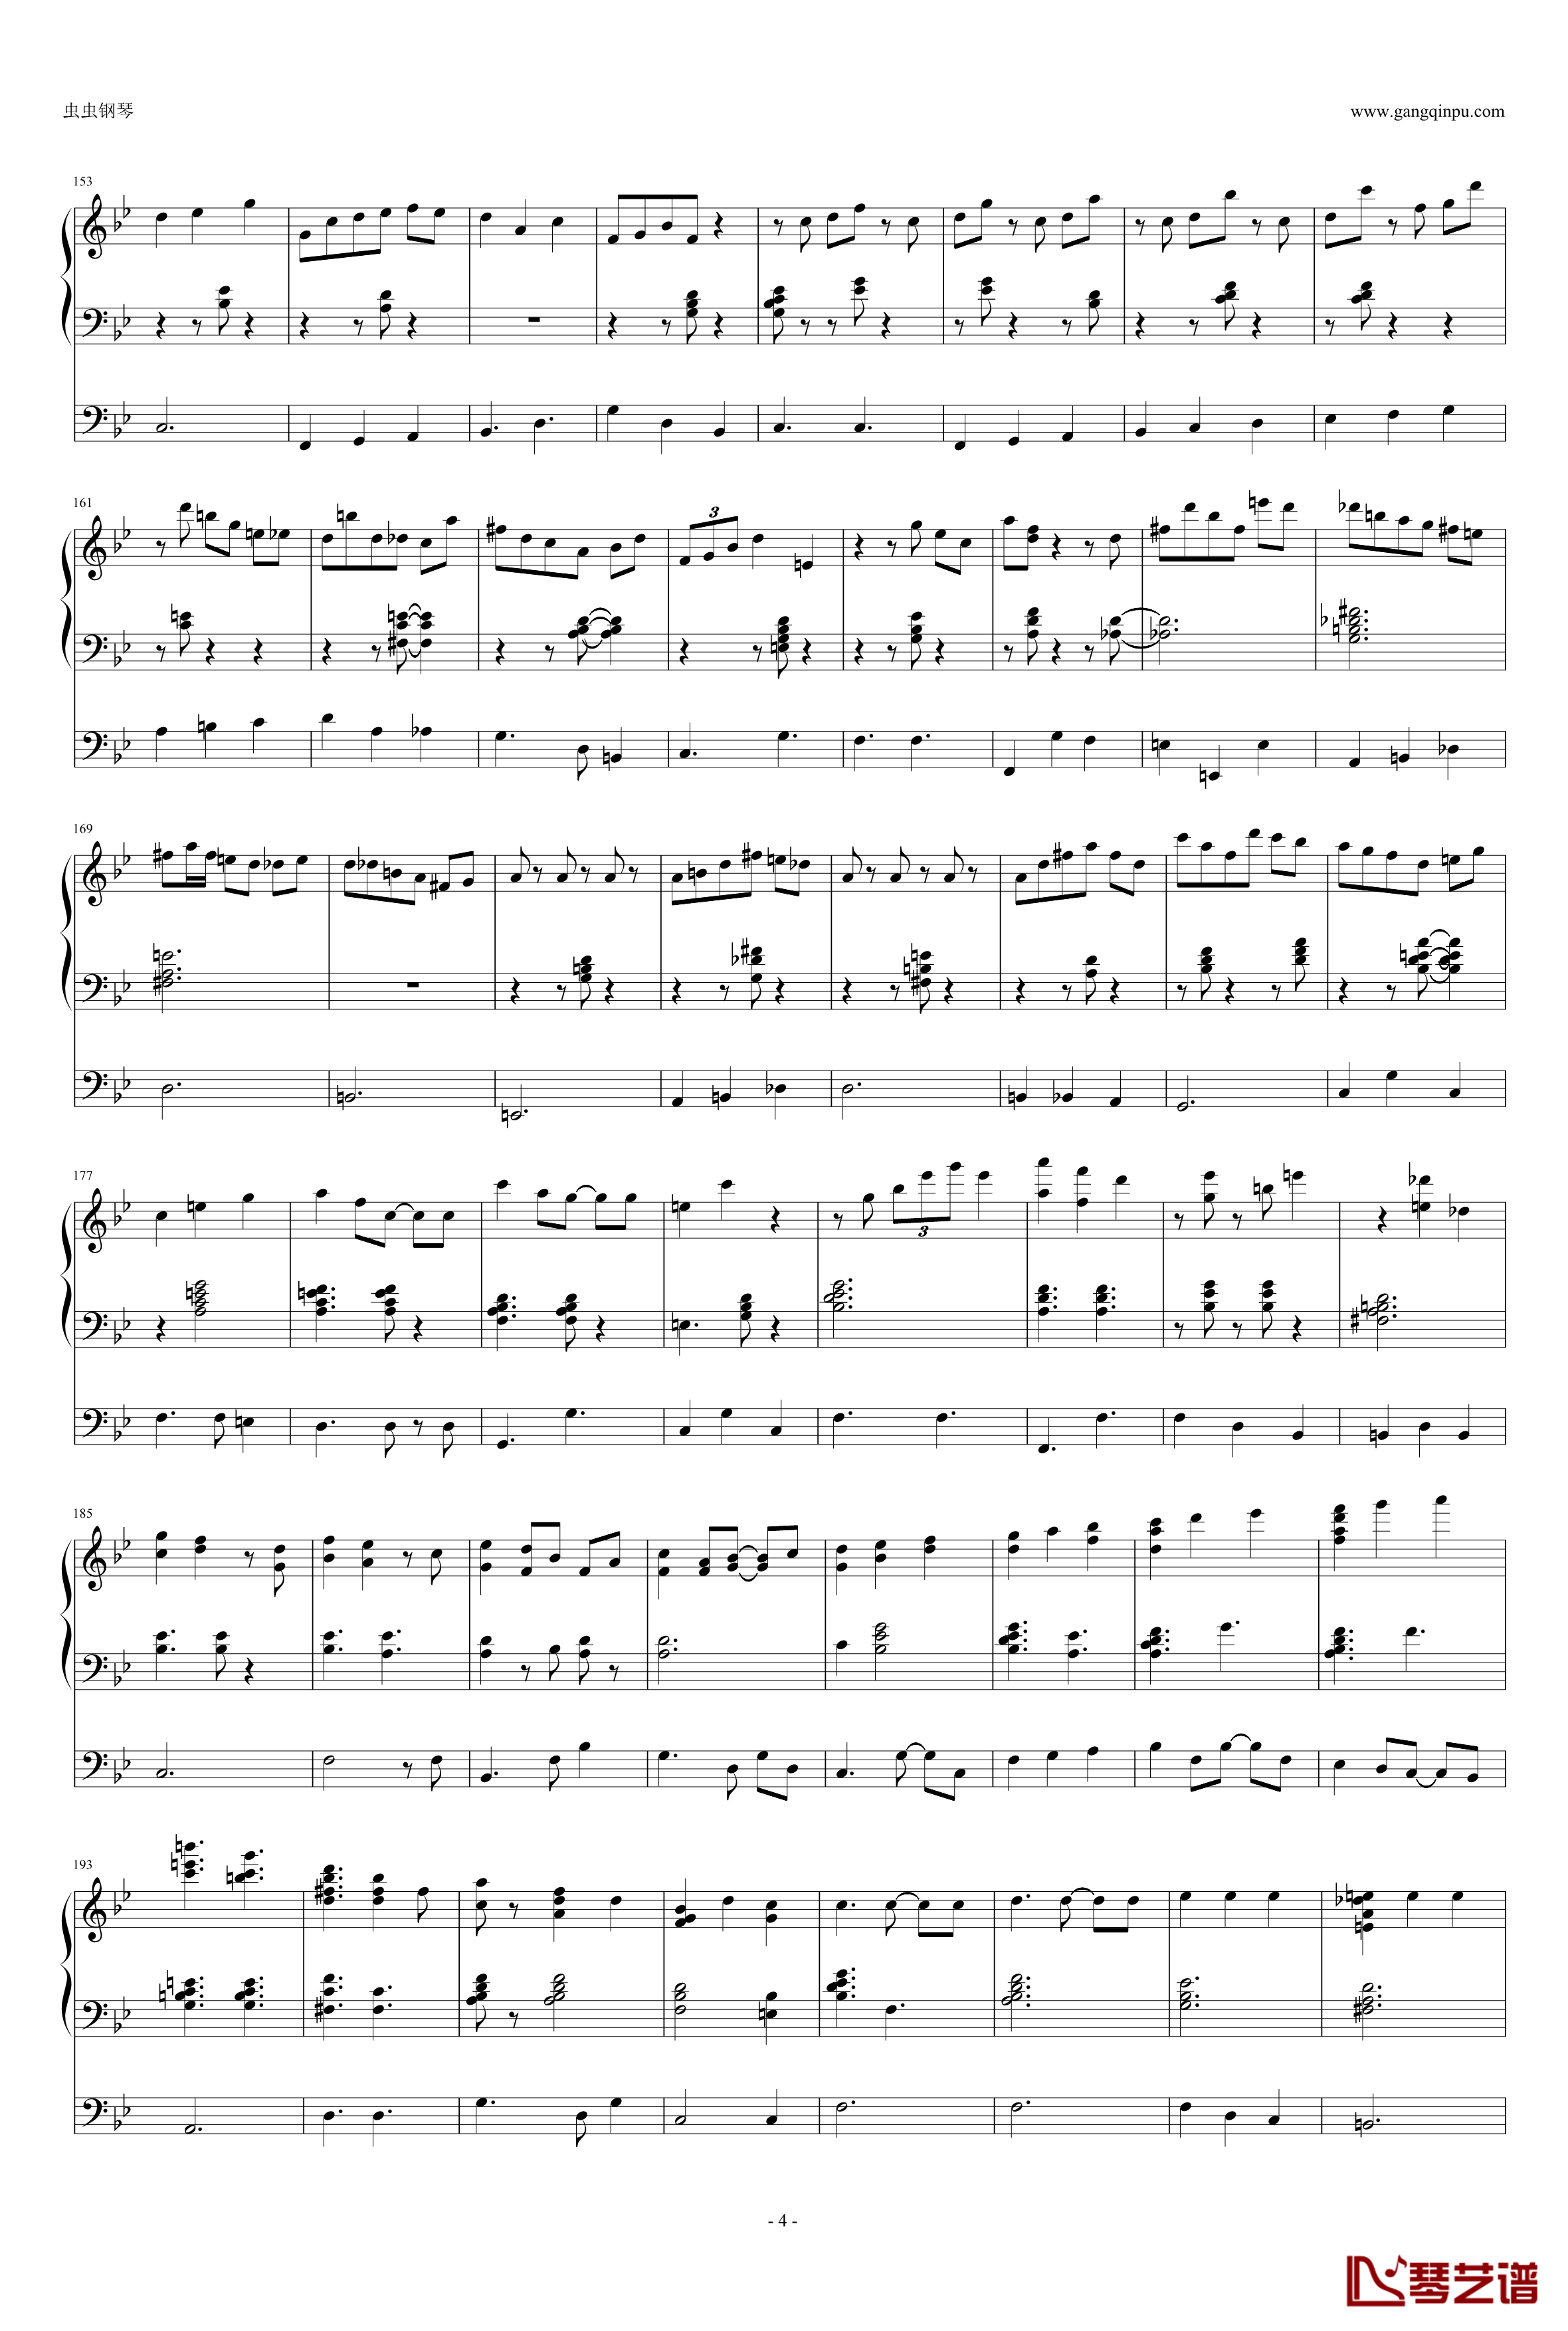 Yokohama Waltz钢琴谱-三行-Louis van Dijk Trio4